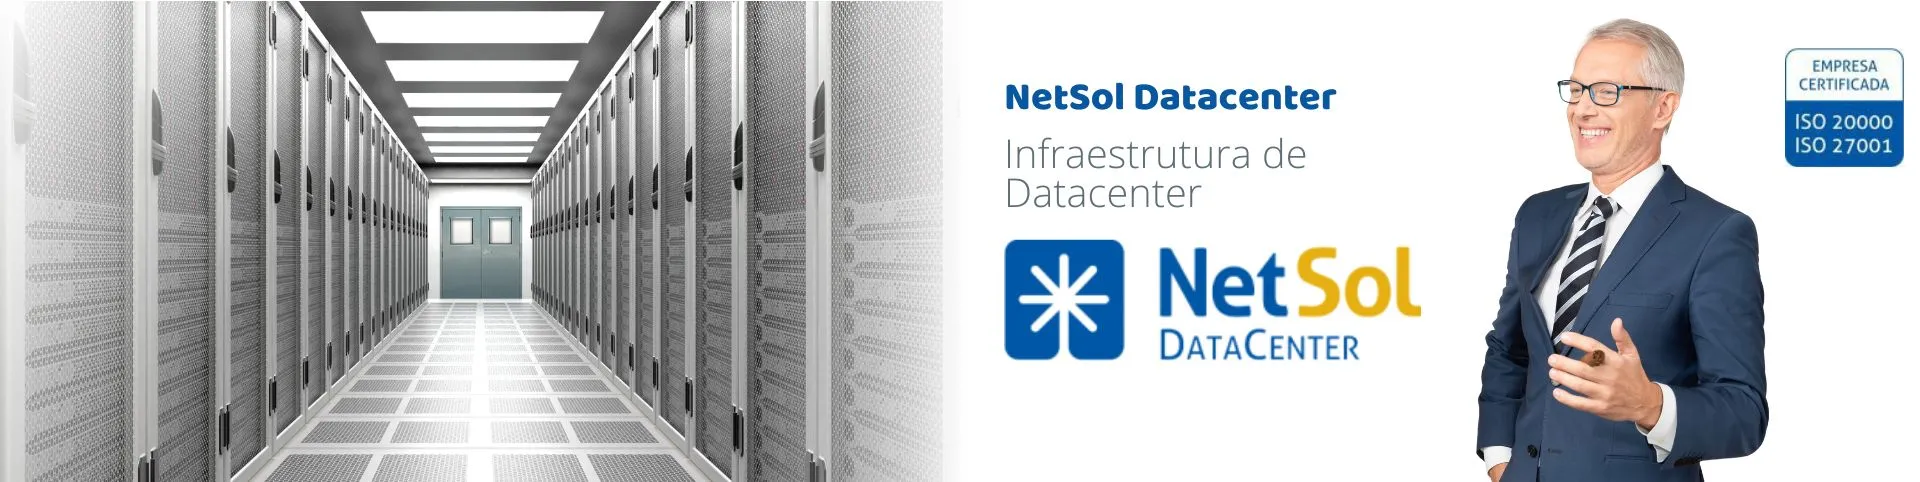 NetSol_DataCenter